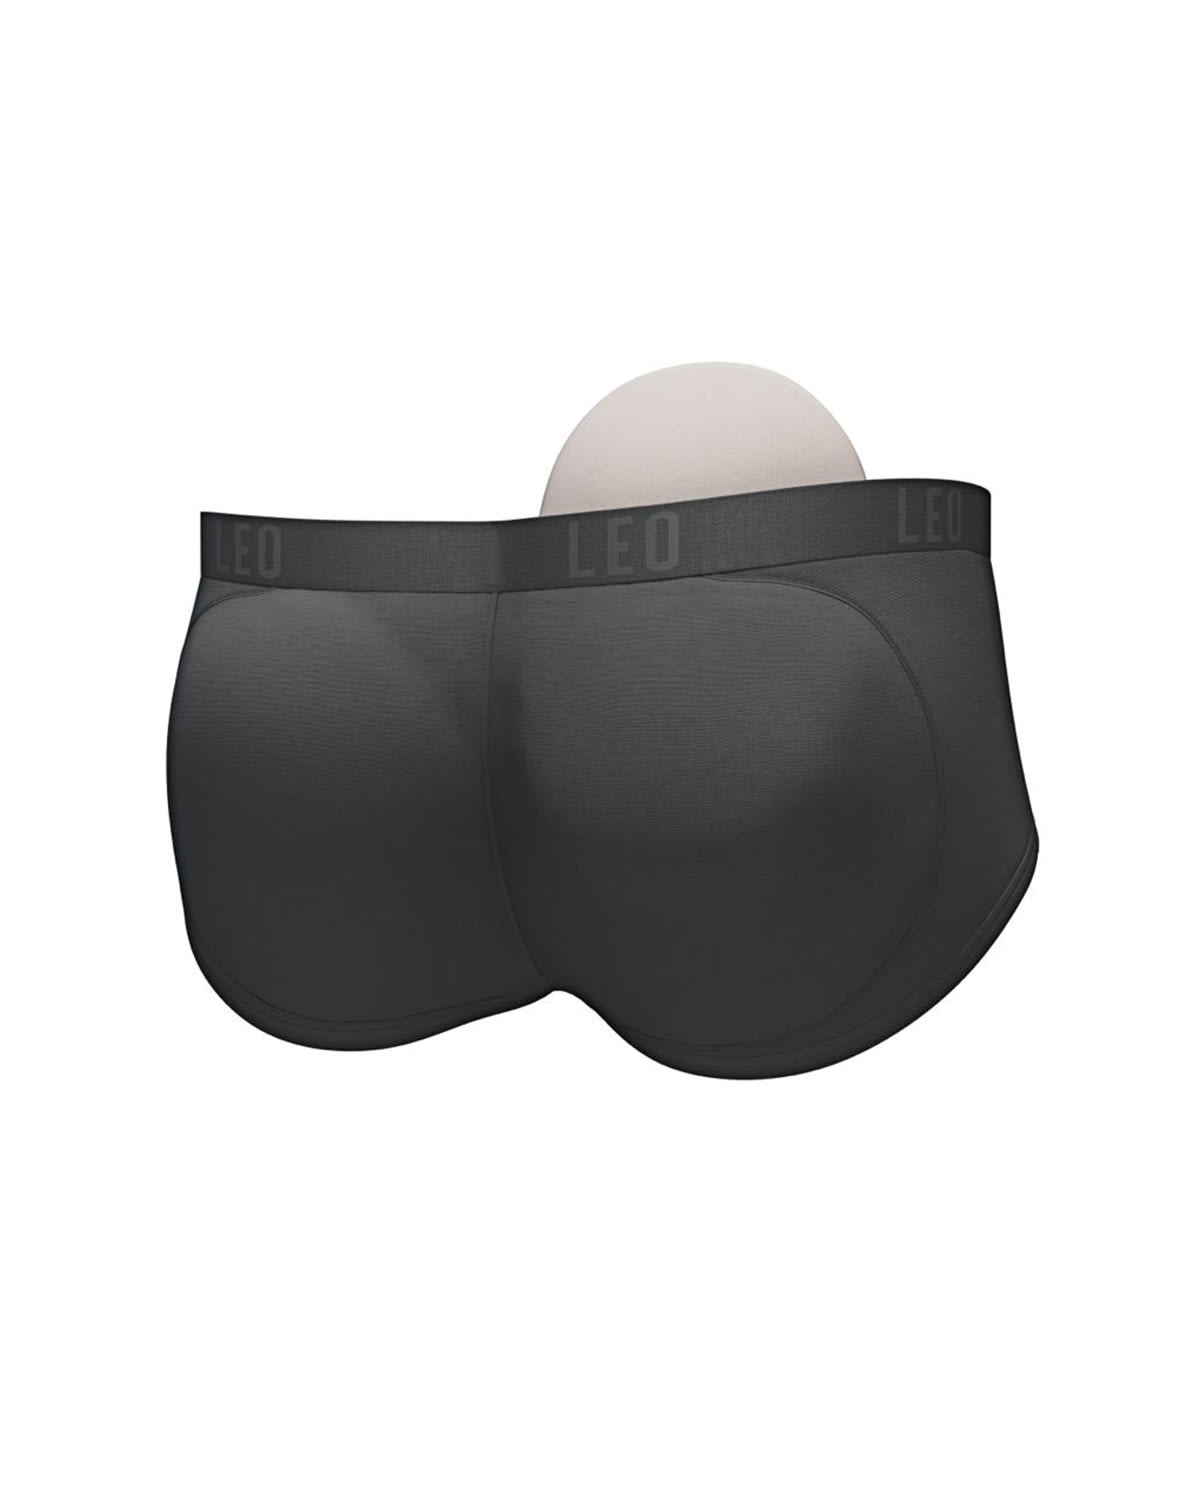 Butt Enhance Underwear Men, Mens Padded Buttocks Underwear